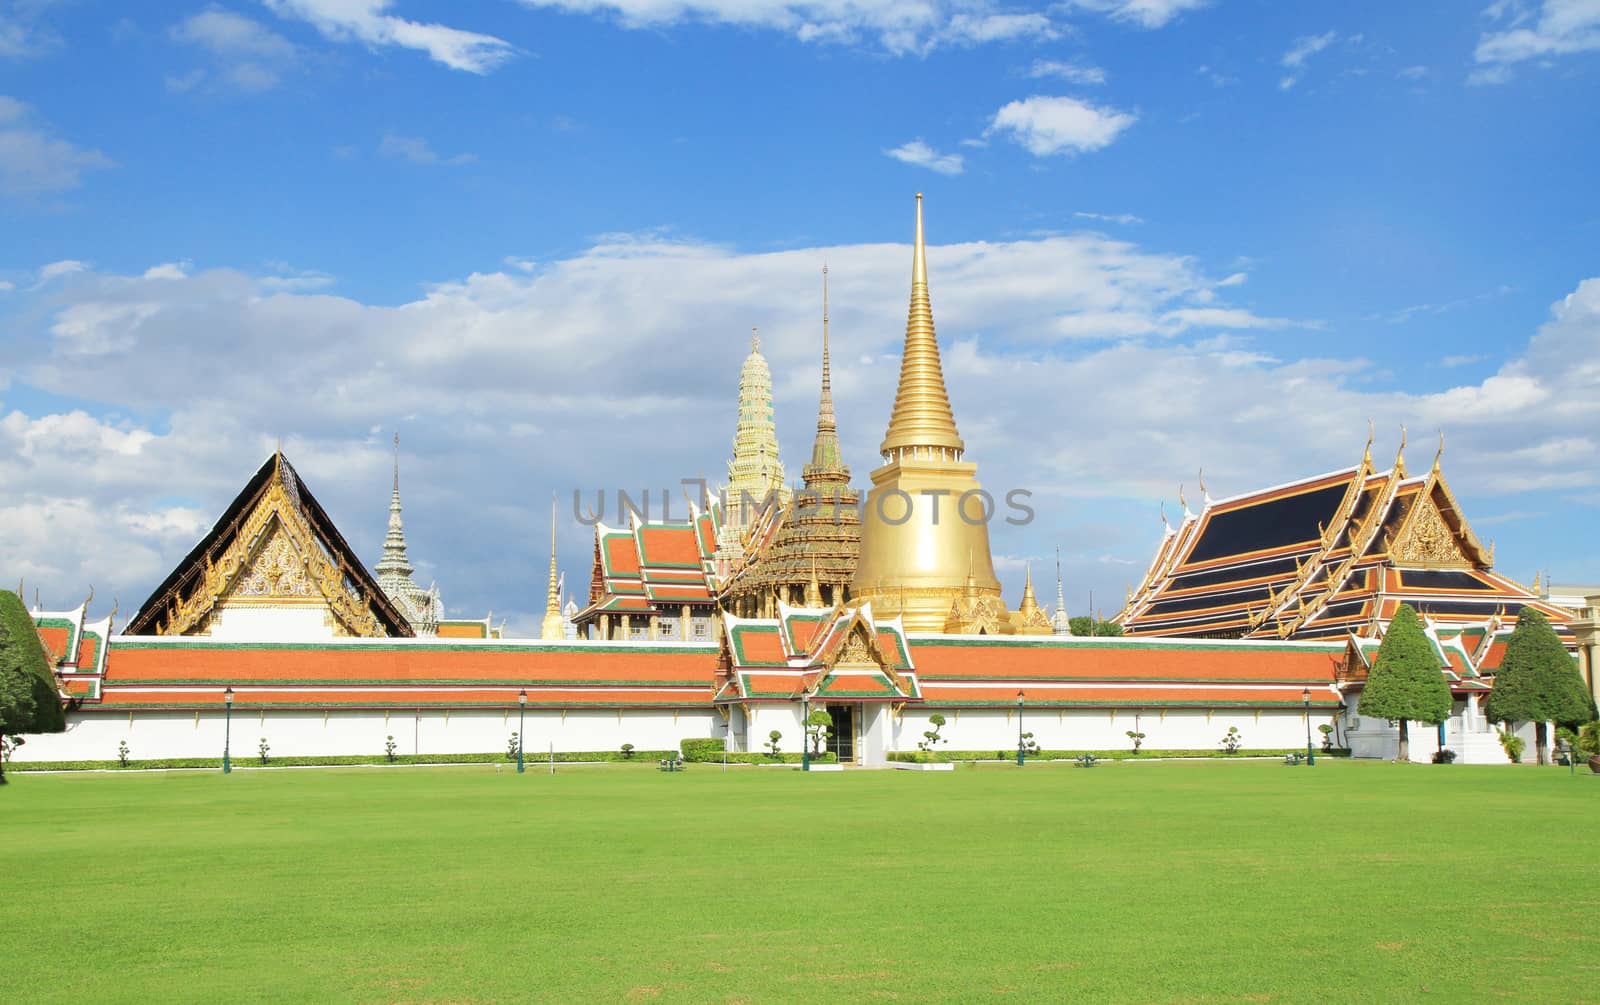 Grand palace in Bangkok, Thailand.